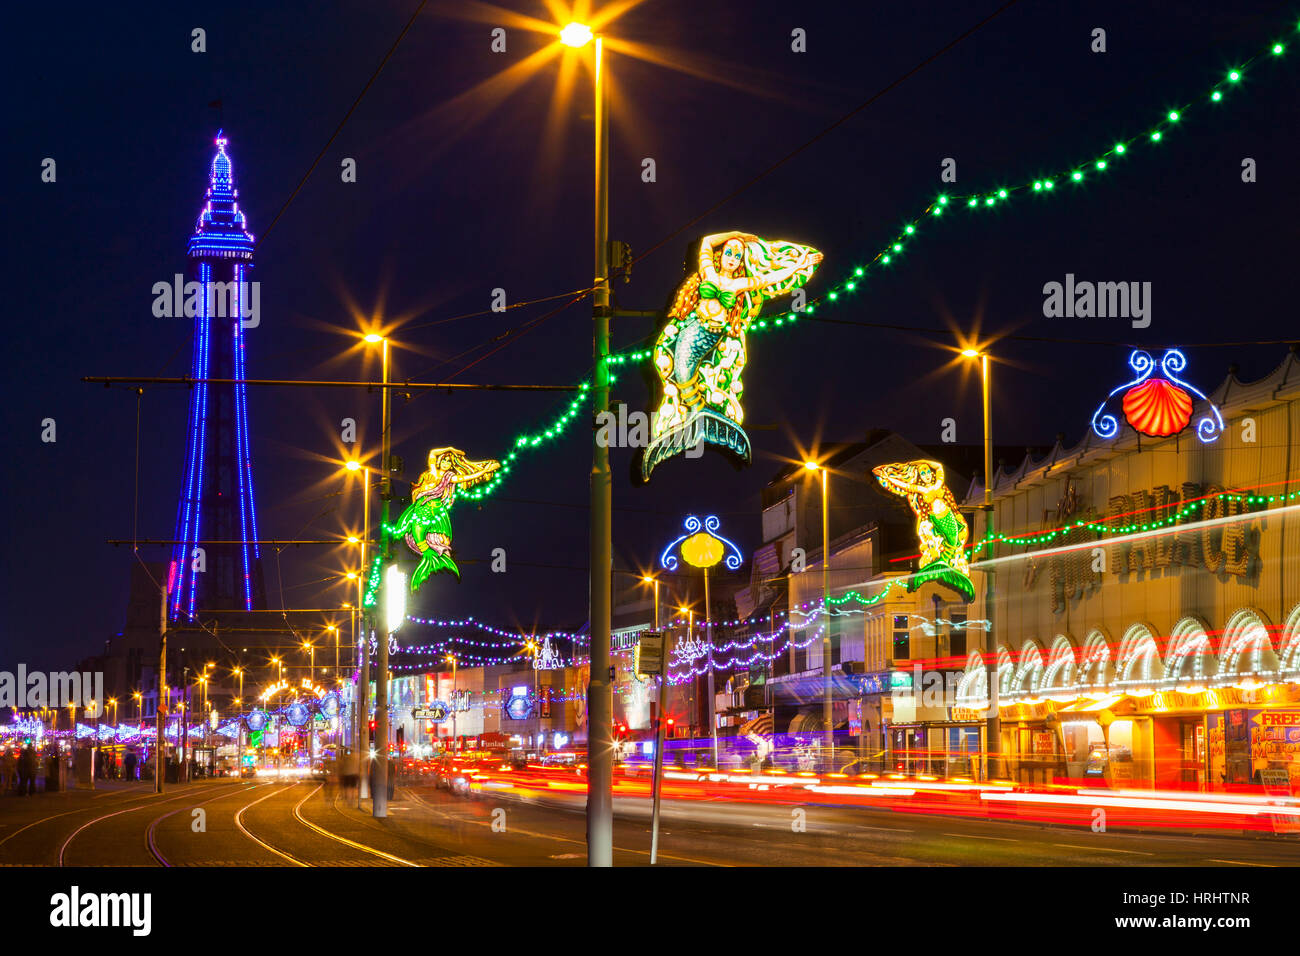 Illuminations, Blackpool, Lancashire, England, United Kingdom Stock Photo